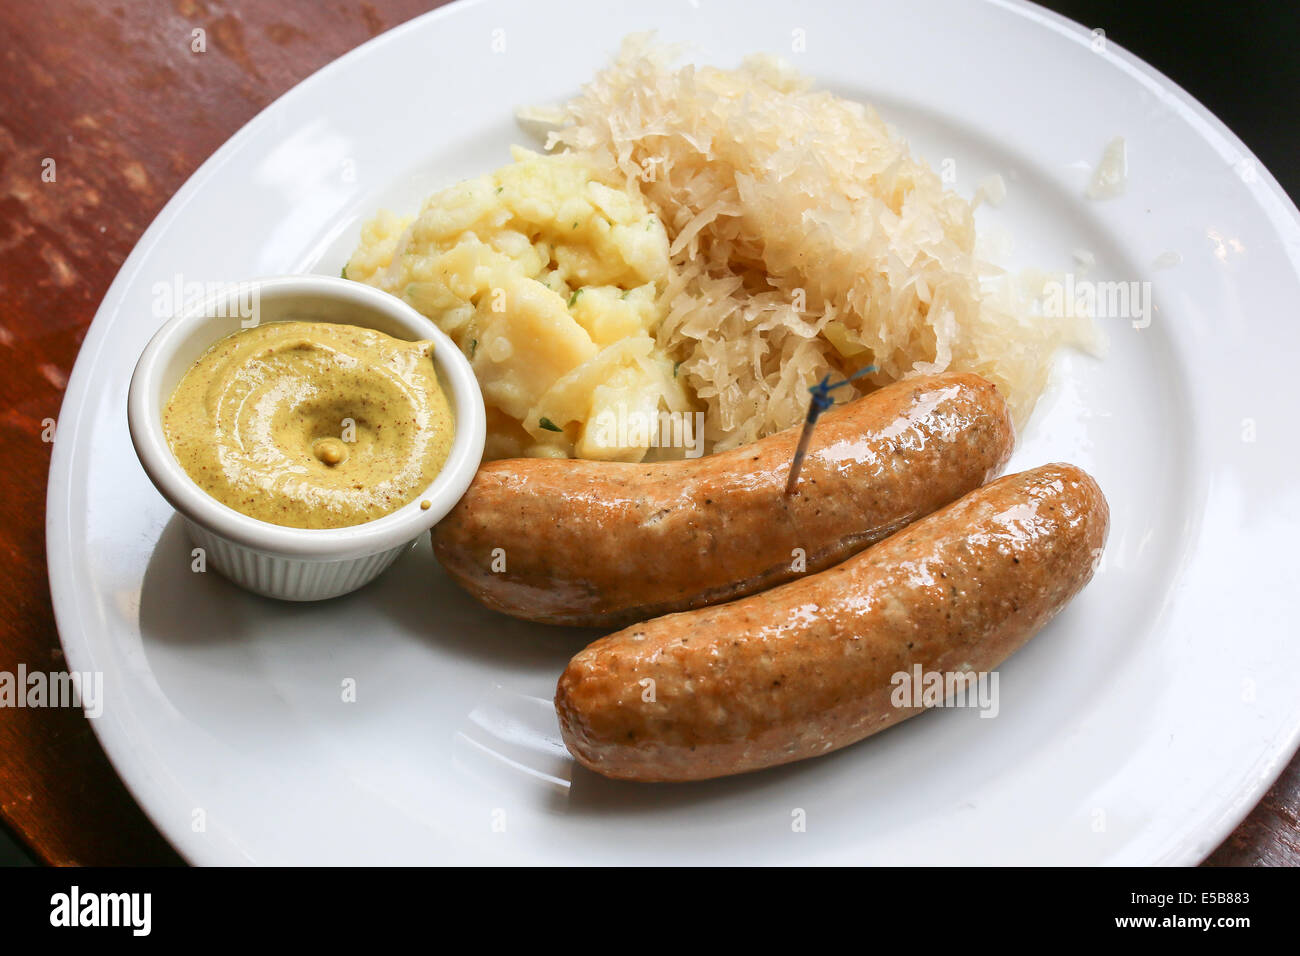 Bratwurst on plate with German potato salad, mustard and sauerkraut Stock Photo